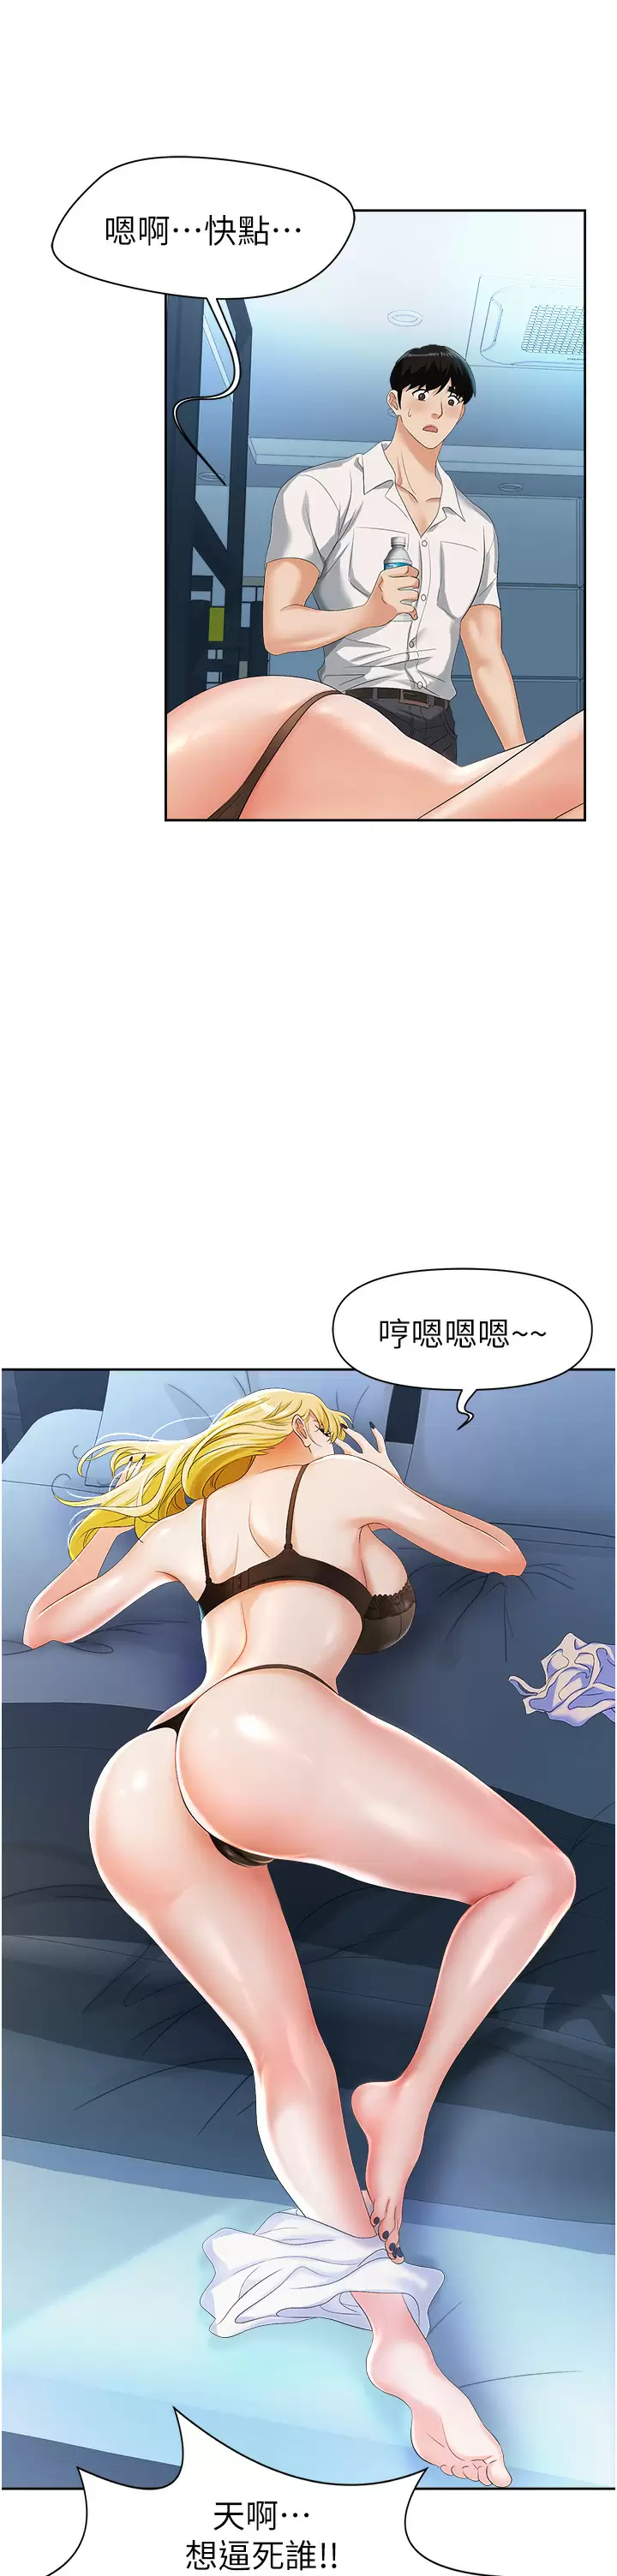 韩国污漫画 職場陷阱 第1话 落入桃色陷阱 61